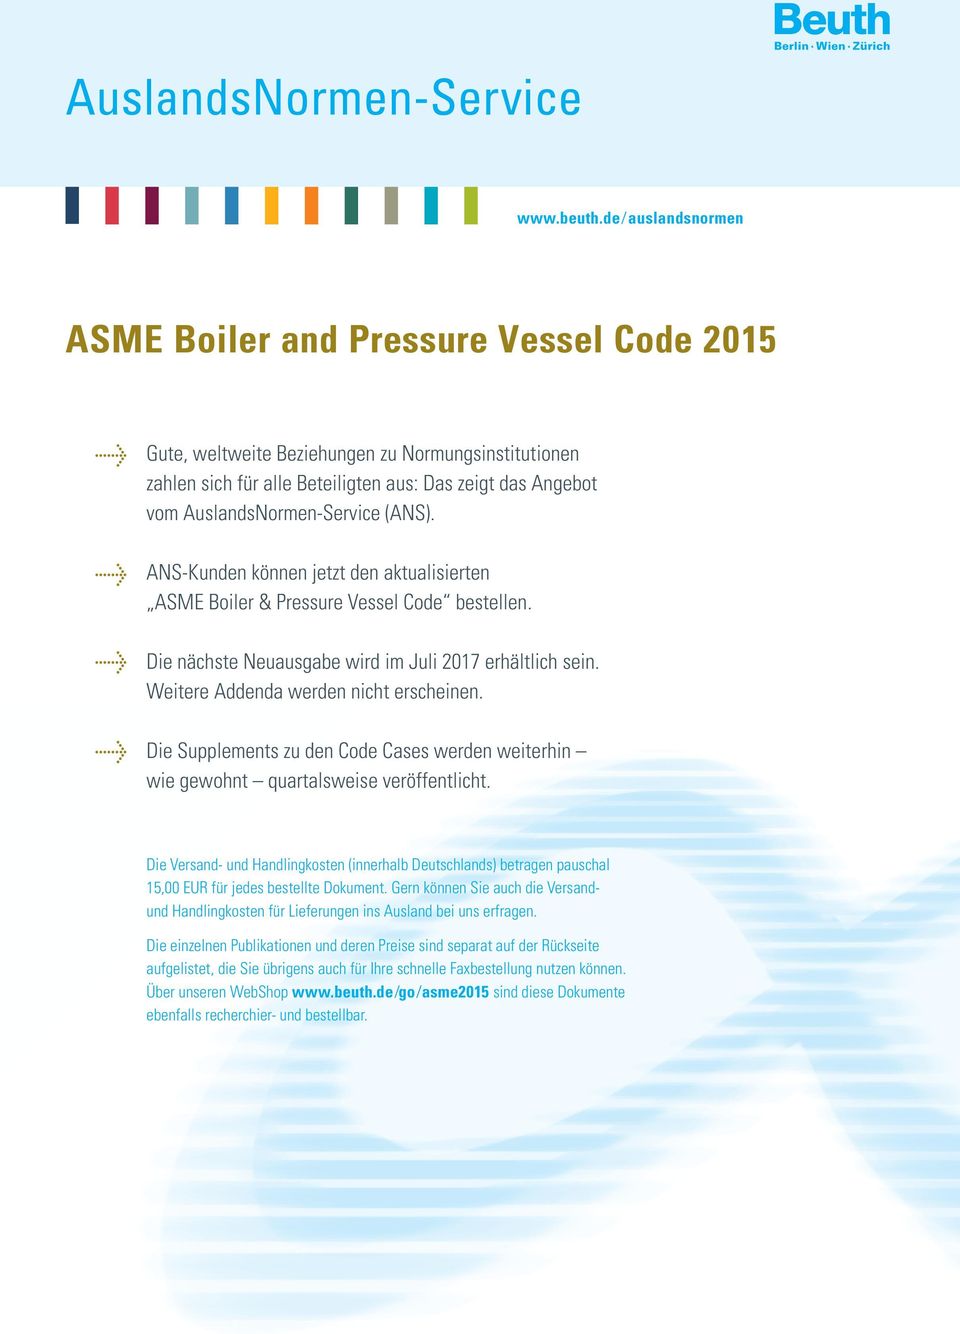 (ANS). ANS-Kunden können jetzt den aktualisierten ASME Boiler & Pressure Vessel Code bestellen. Die nächste Neuausgabe wird im Juli 2017 erhältlich sein. Weitere Addenda werden nicht erscheinen.